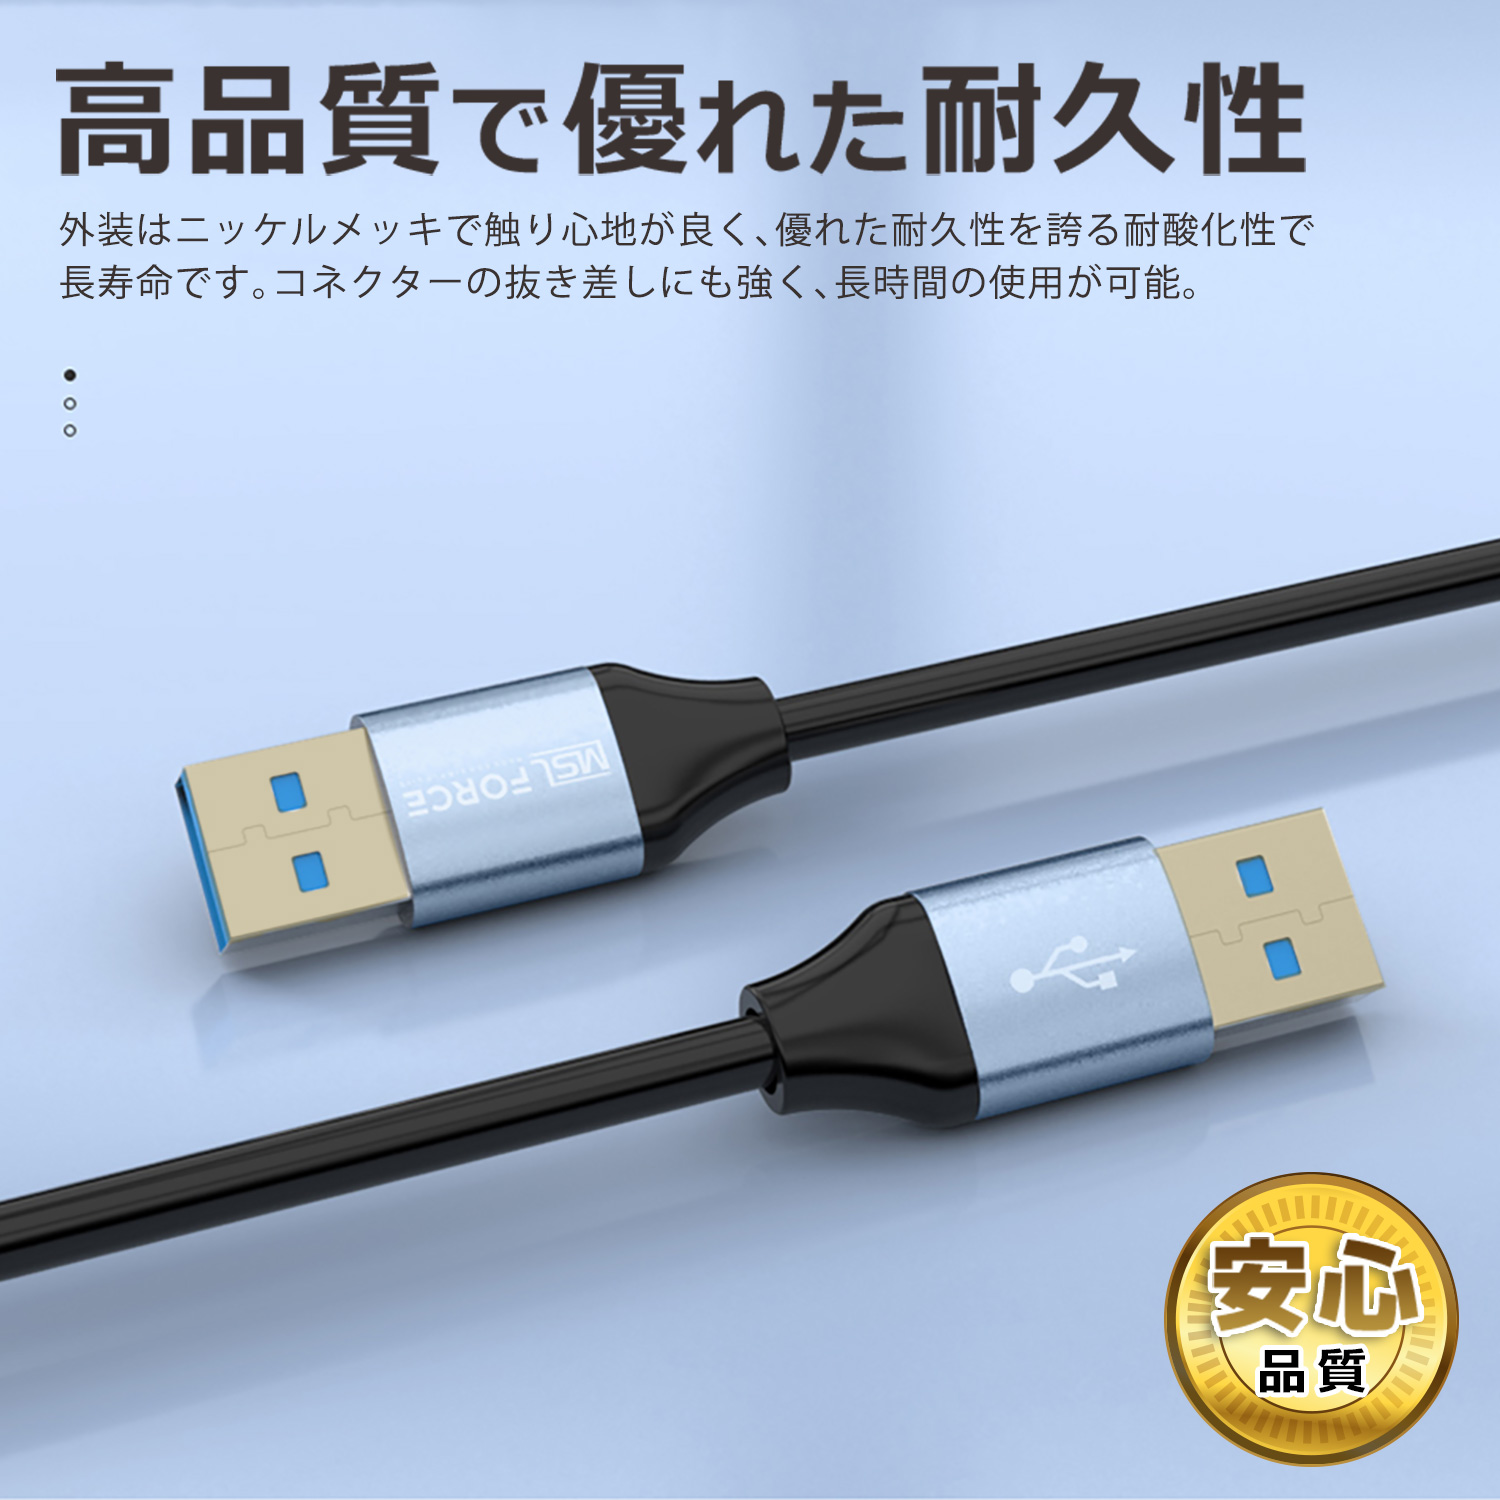  сегодня максимальный 600 иен скидка USB 3.0 кабель позолоченный коннектор 5Gbp модель A to модель A мужской - мужской коннектор высокая скорость данные пересылка 0.5m 1m 2m u3a2a бесплатная доставка 